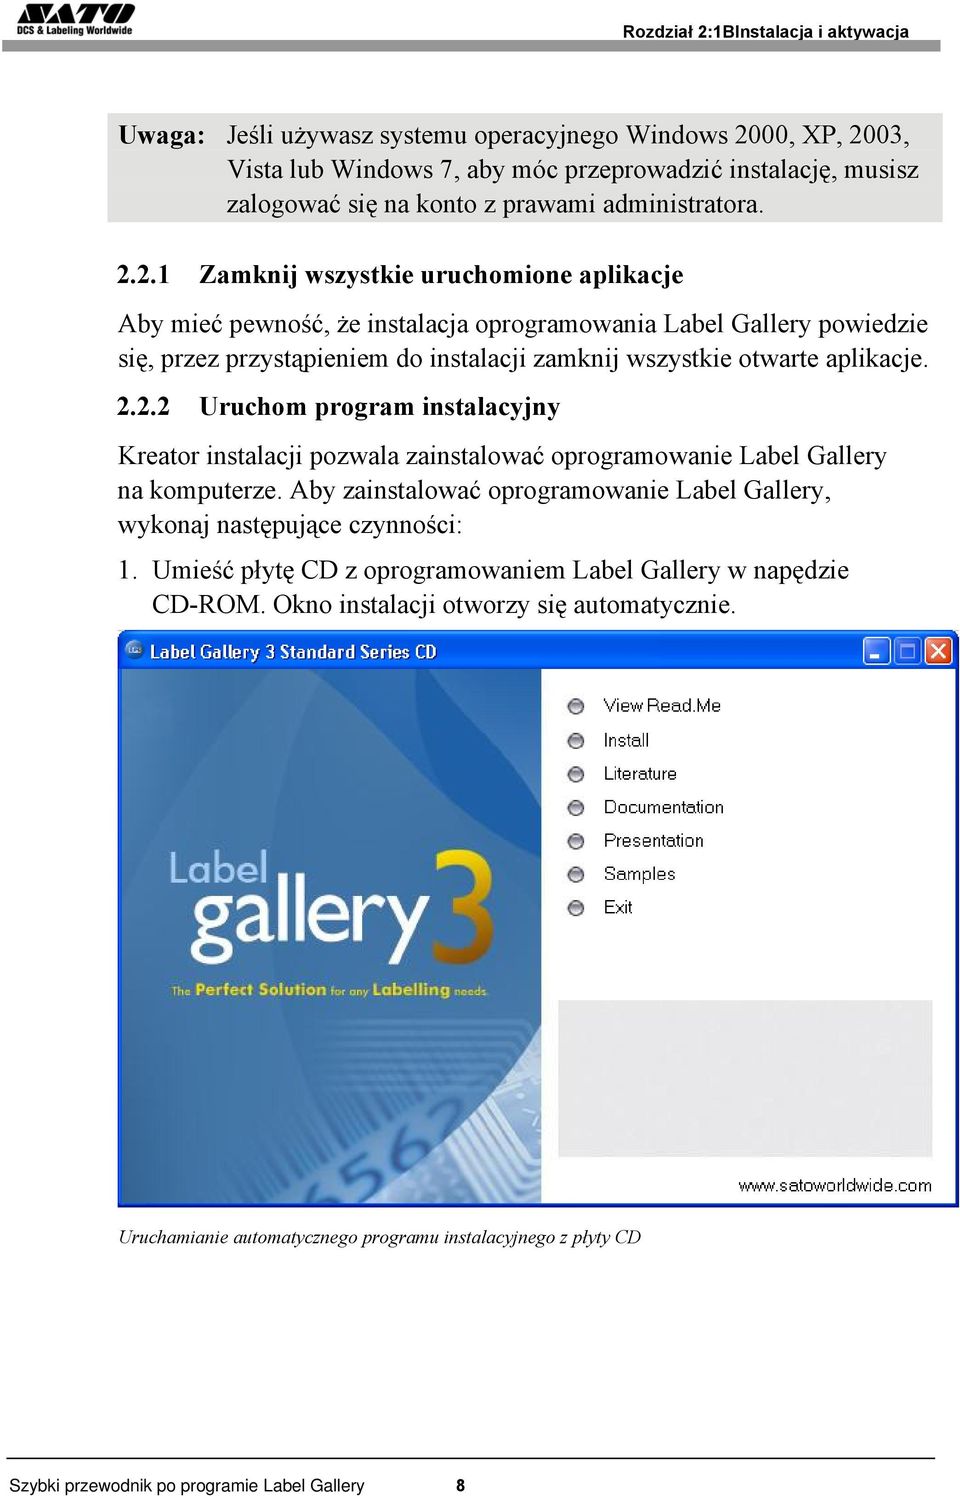 2.1 Zamknij wszystkie uruchomione aplikacje Aby mieć pewność, że instalacja oprogramowania Label Gallery powiedzie się, przez przystąpieniem do instalacji zamknij wszystkie otwarte aplikacje. 2.2.2 Uruchom program instalacyjny Kreator instalacji pozwala zainstalować oprogramowanie Label Gallery na komputerze.